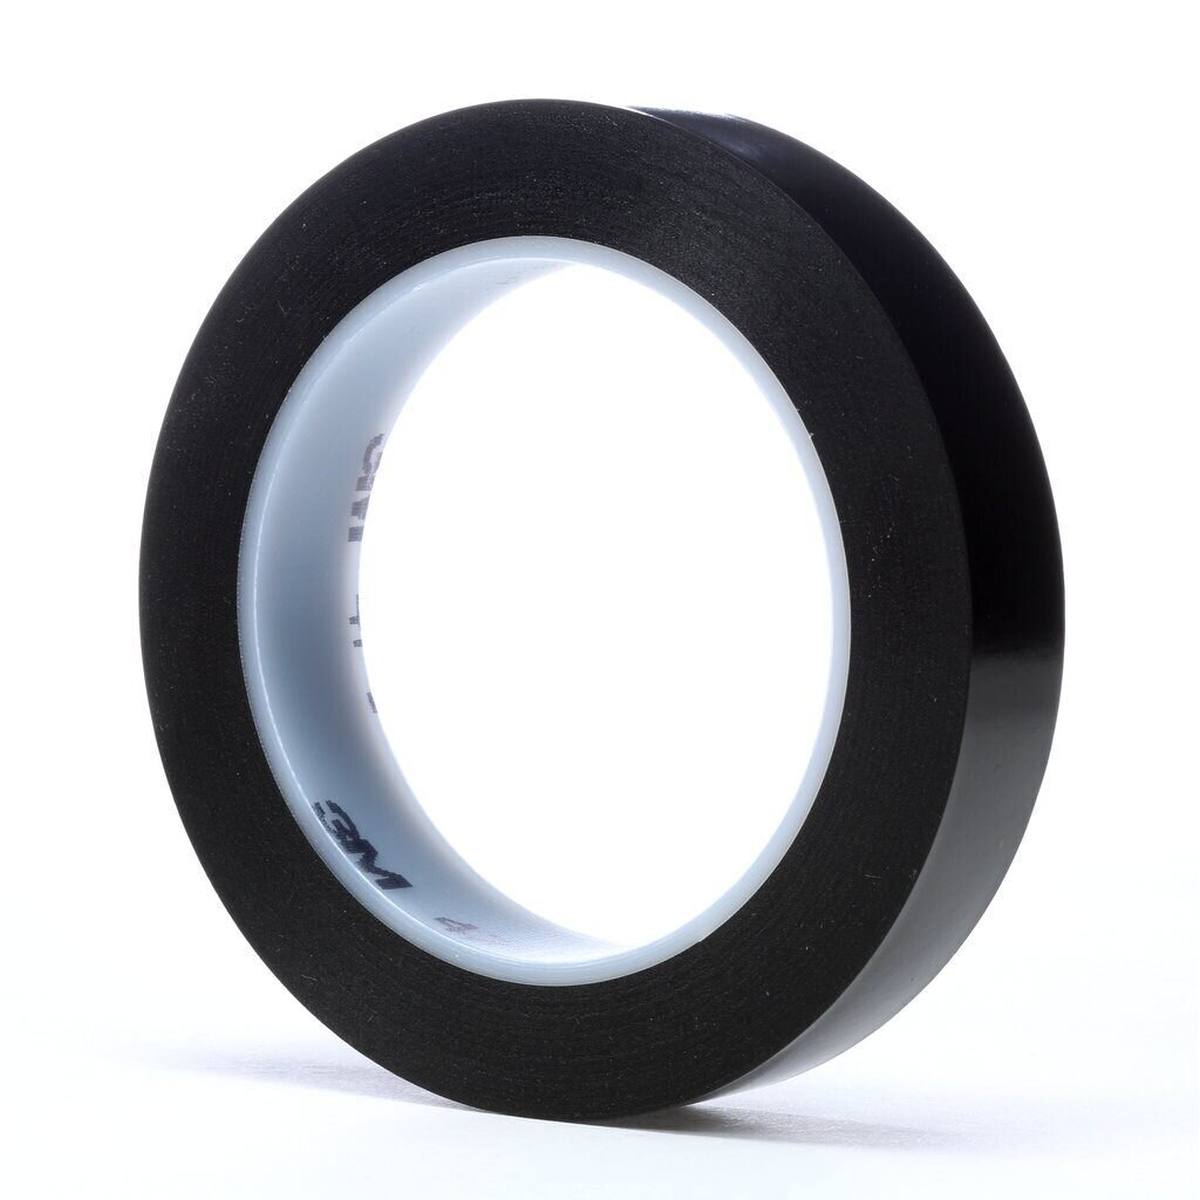 Nastro adesivo 3M in PVC morbido 471 F, nero, 19 mm x 33 m, 0,13 mm